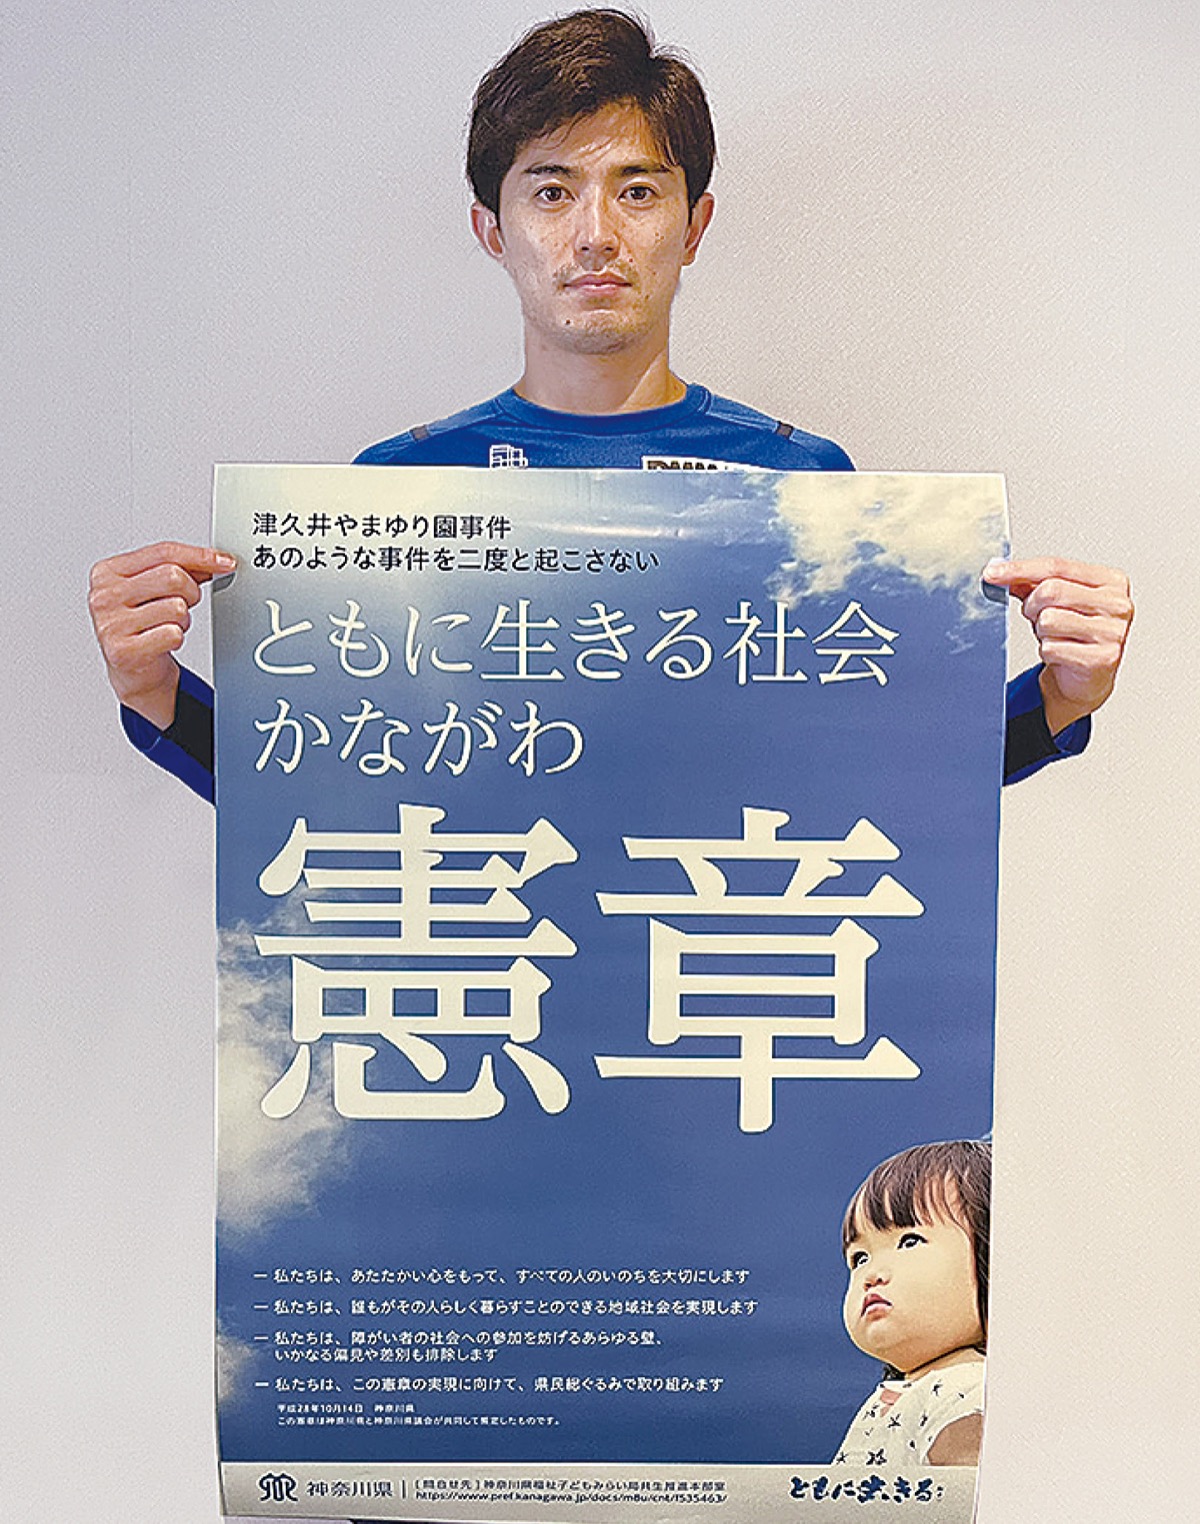 憲章ポスターを持つ谷口彰悟選手